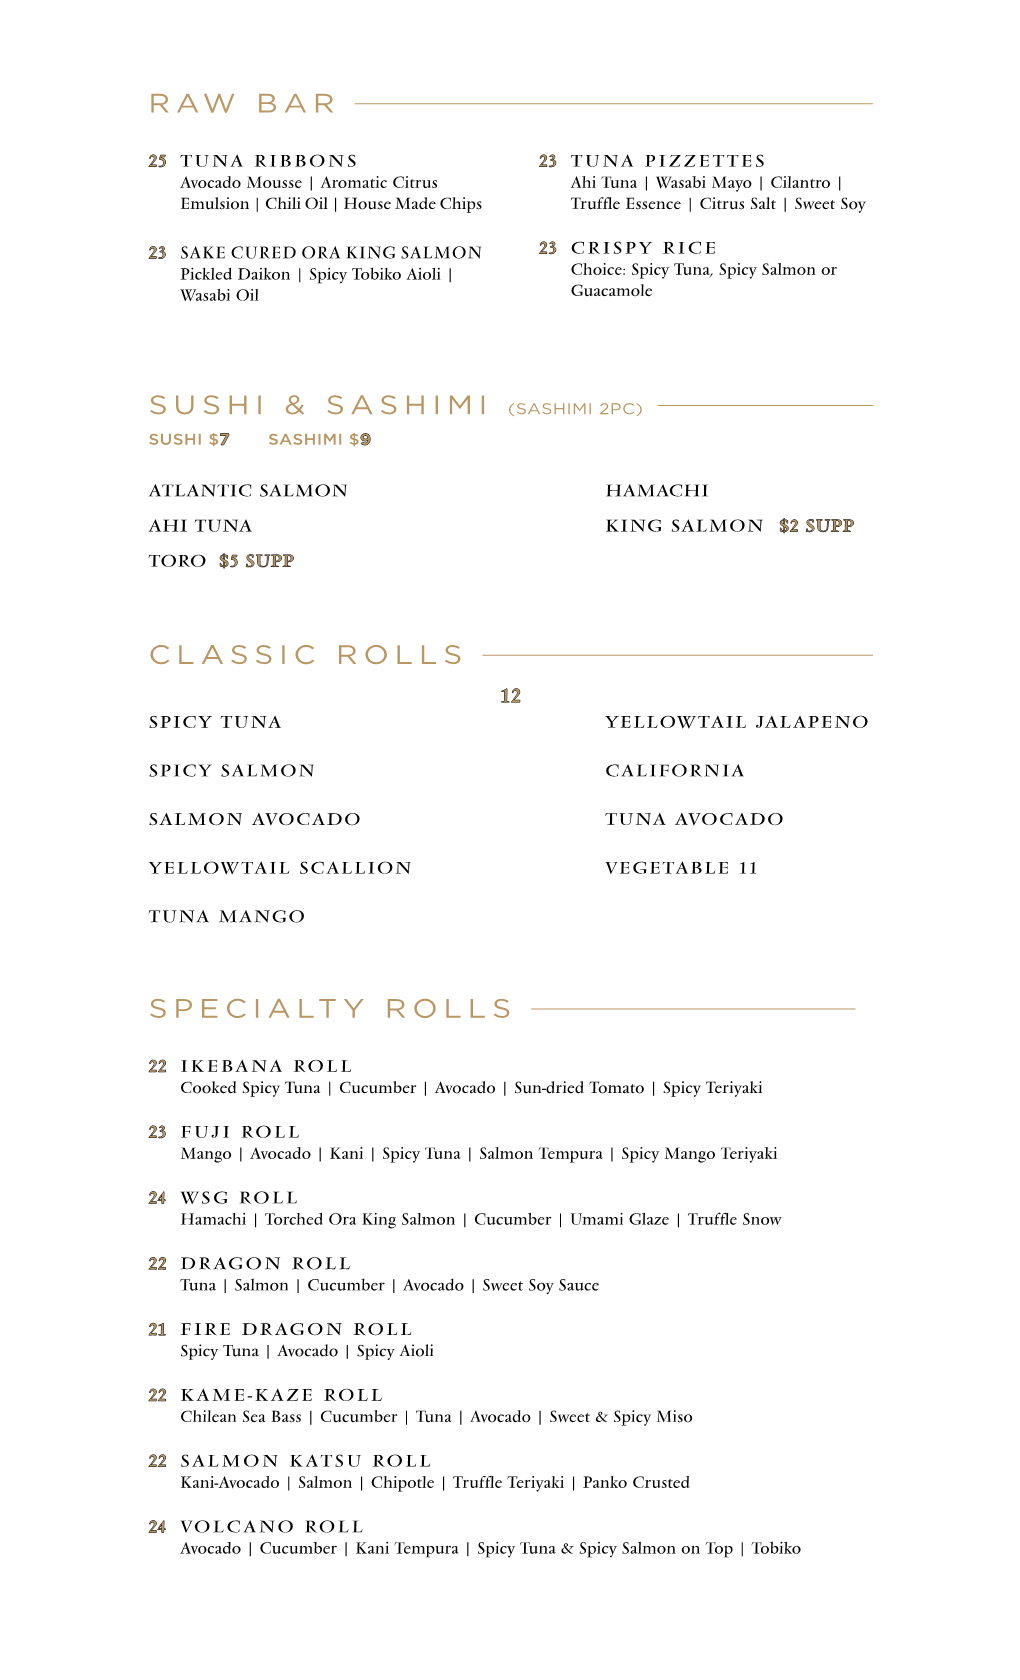 Raw Bar Specialty Rolls Sushi & Sashimi